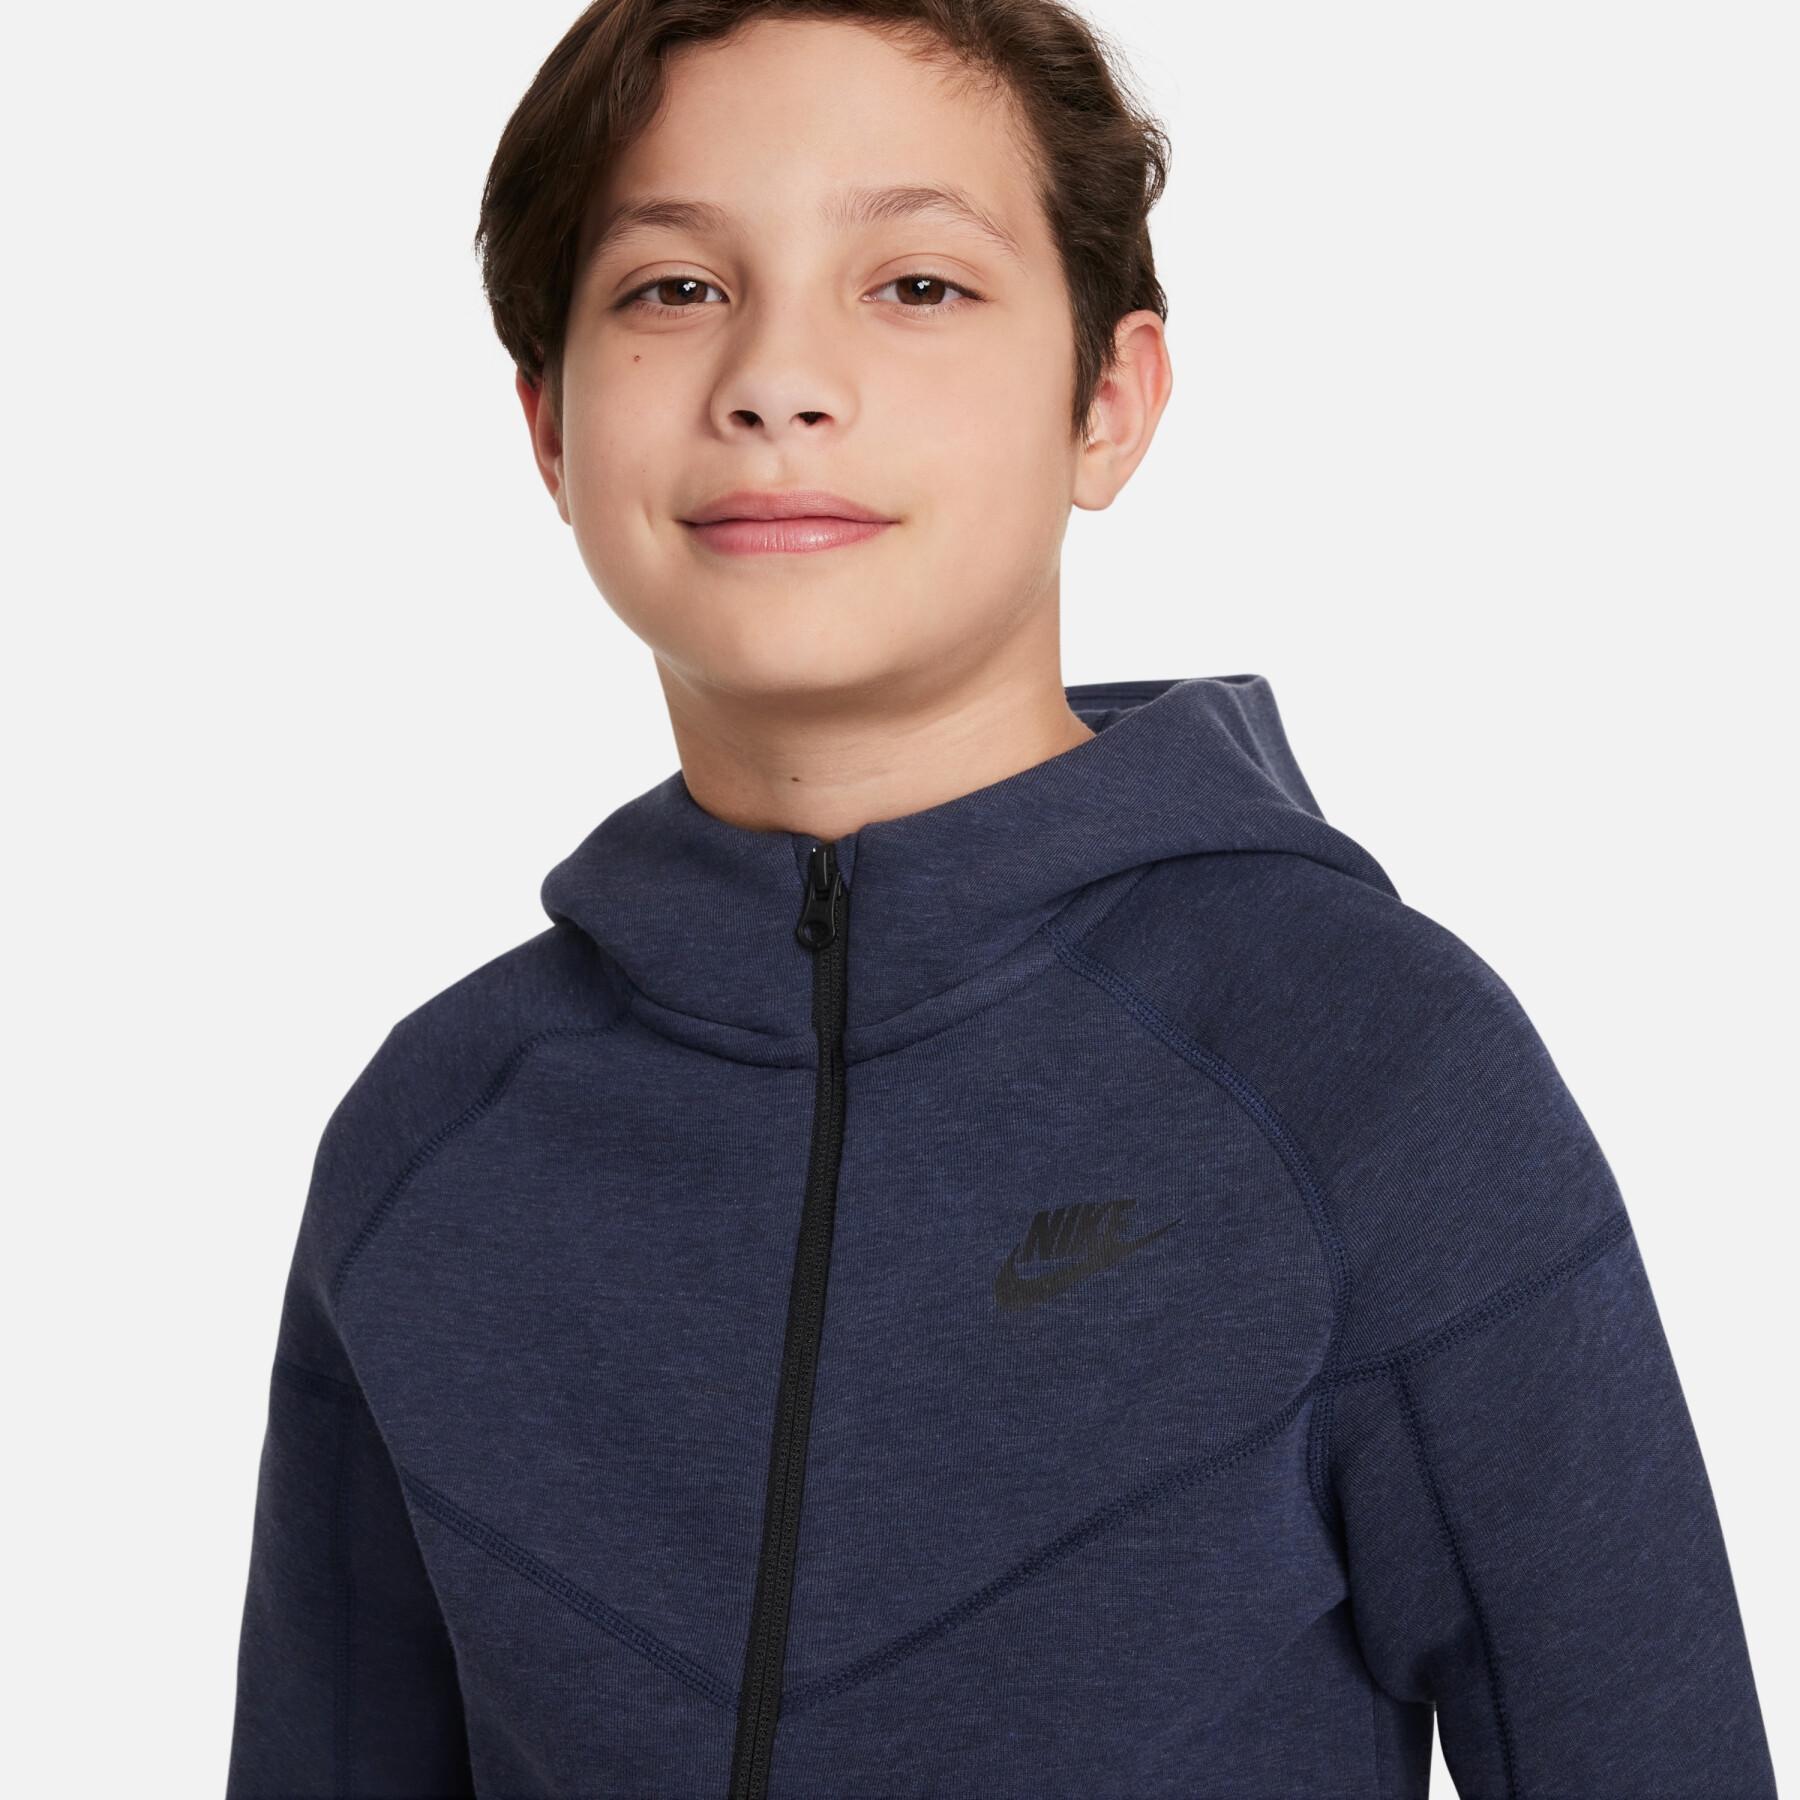 Children's zip-up sweatshirt Nike Tech Fleece